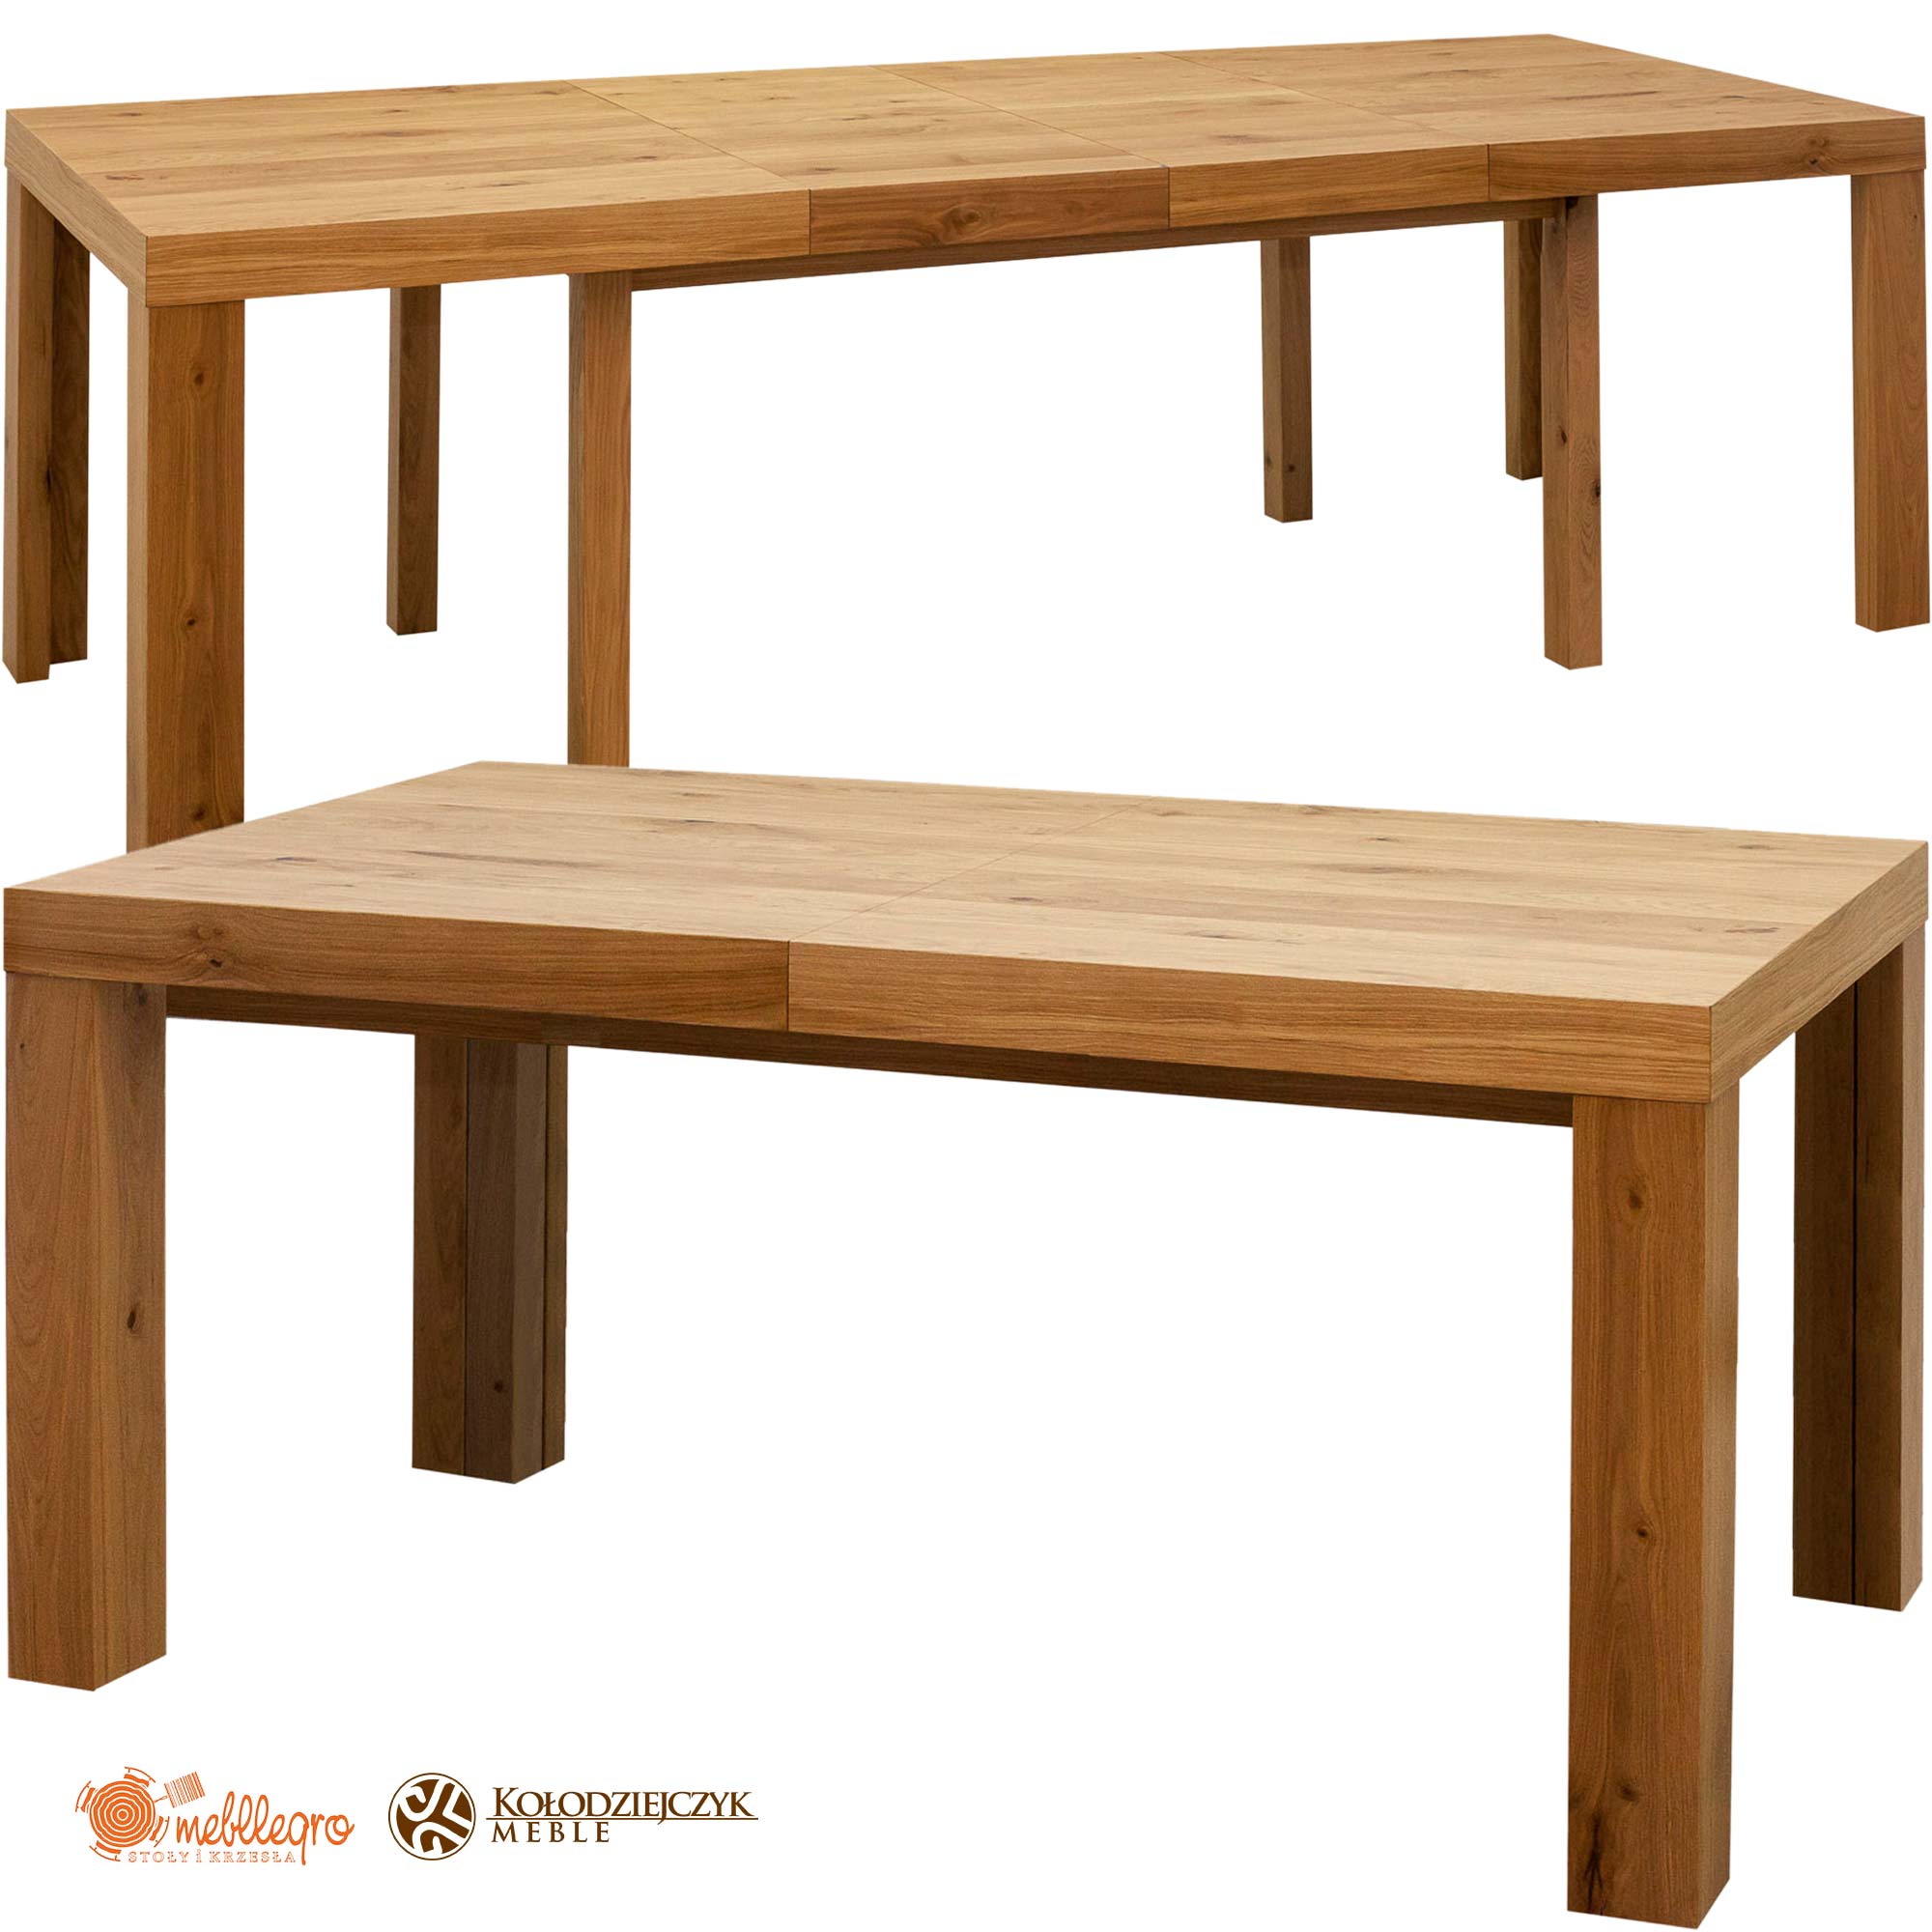 Stół S26 drewniany rozkładany 8 nóg